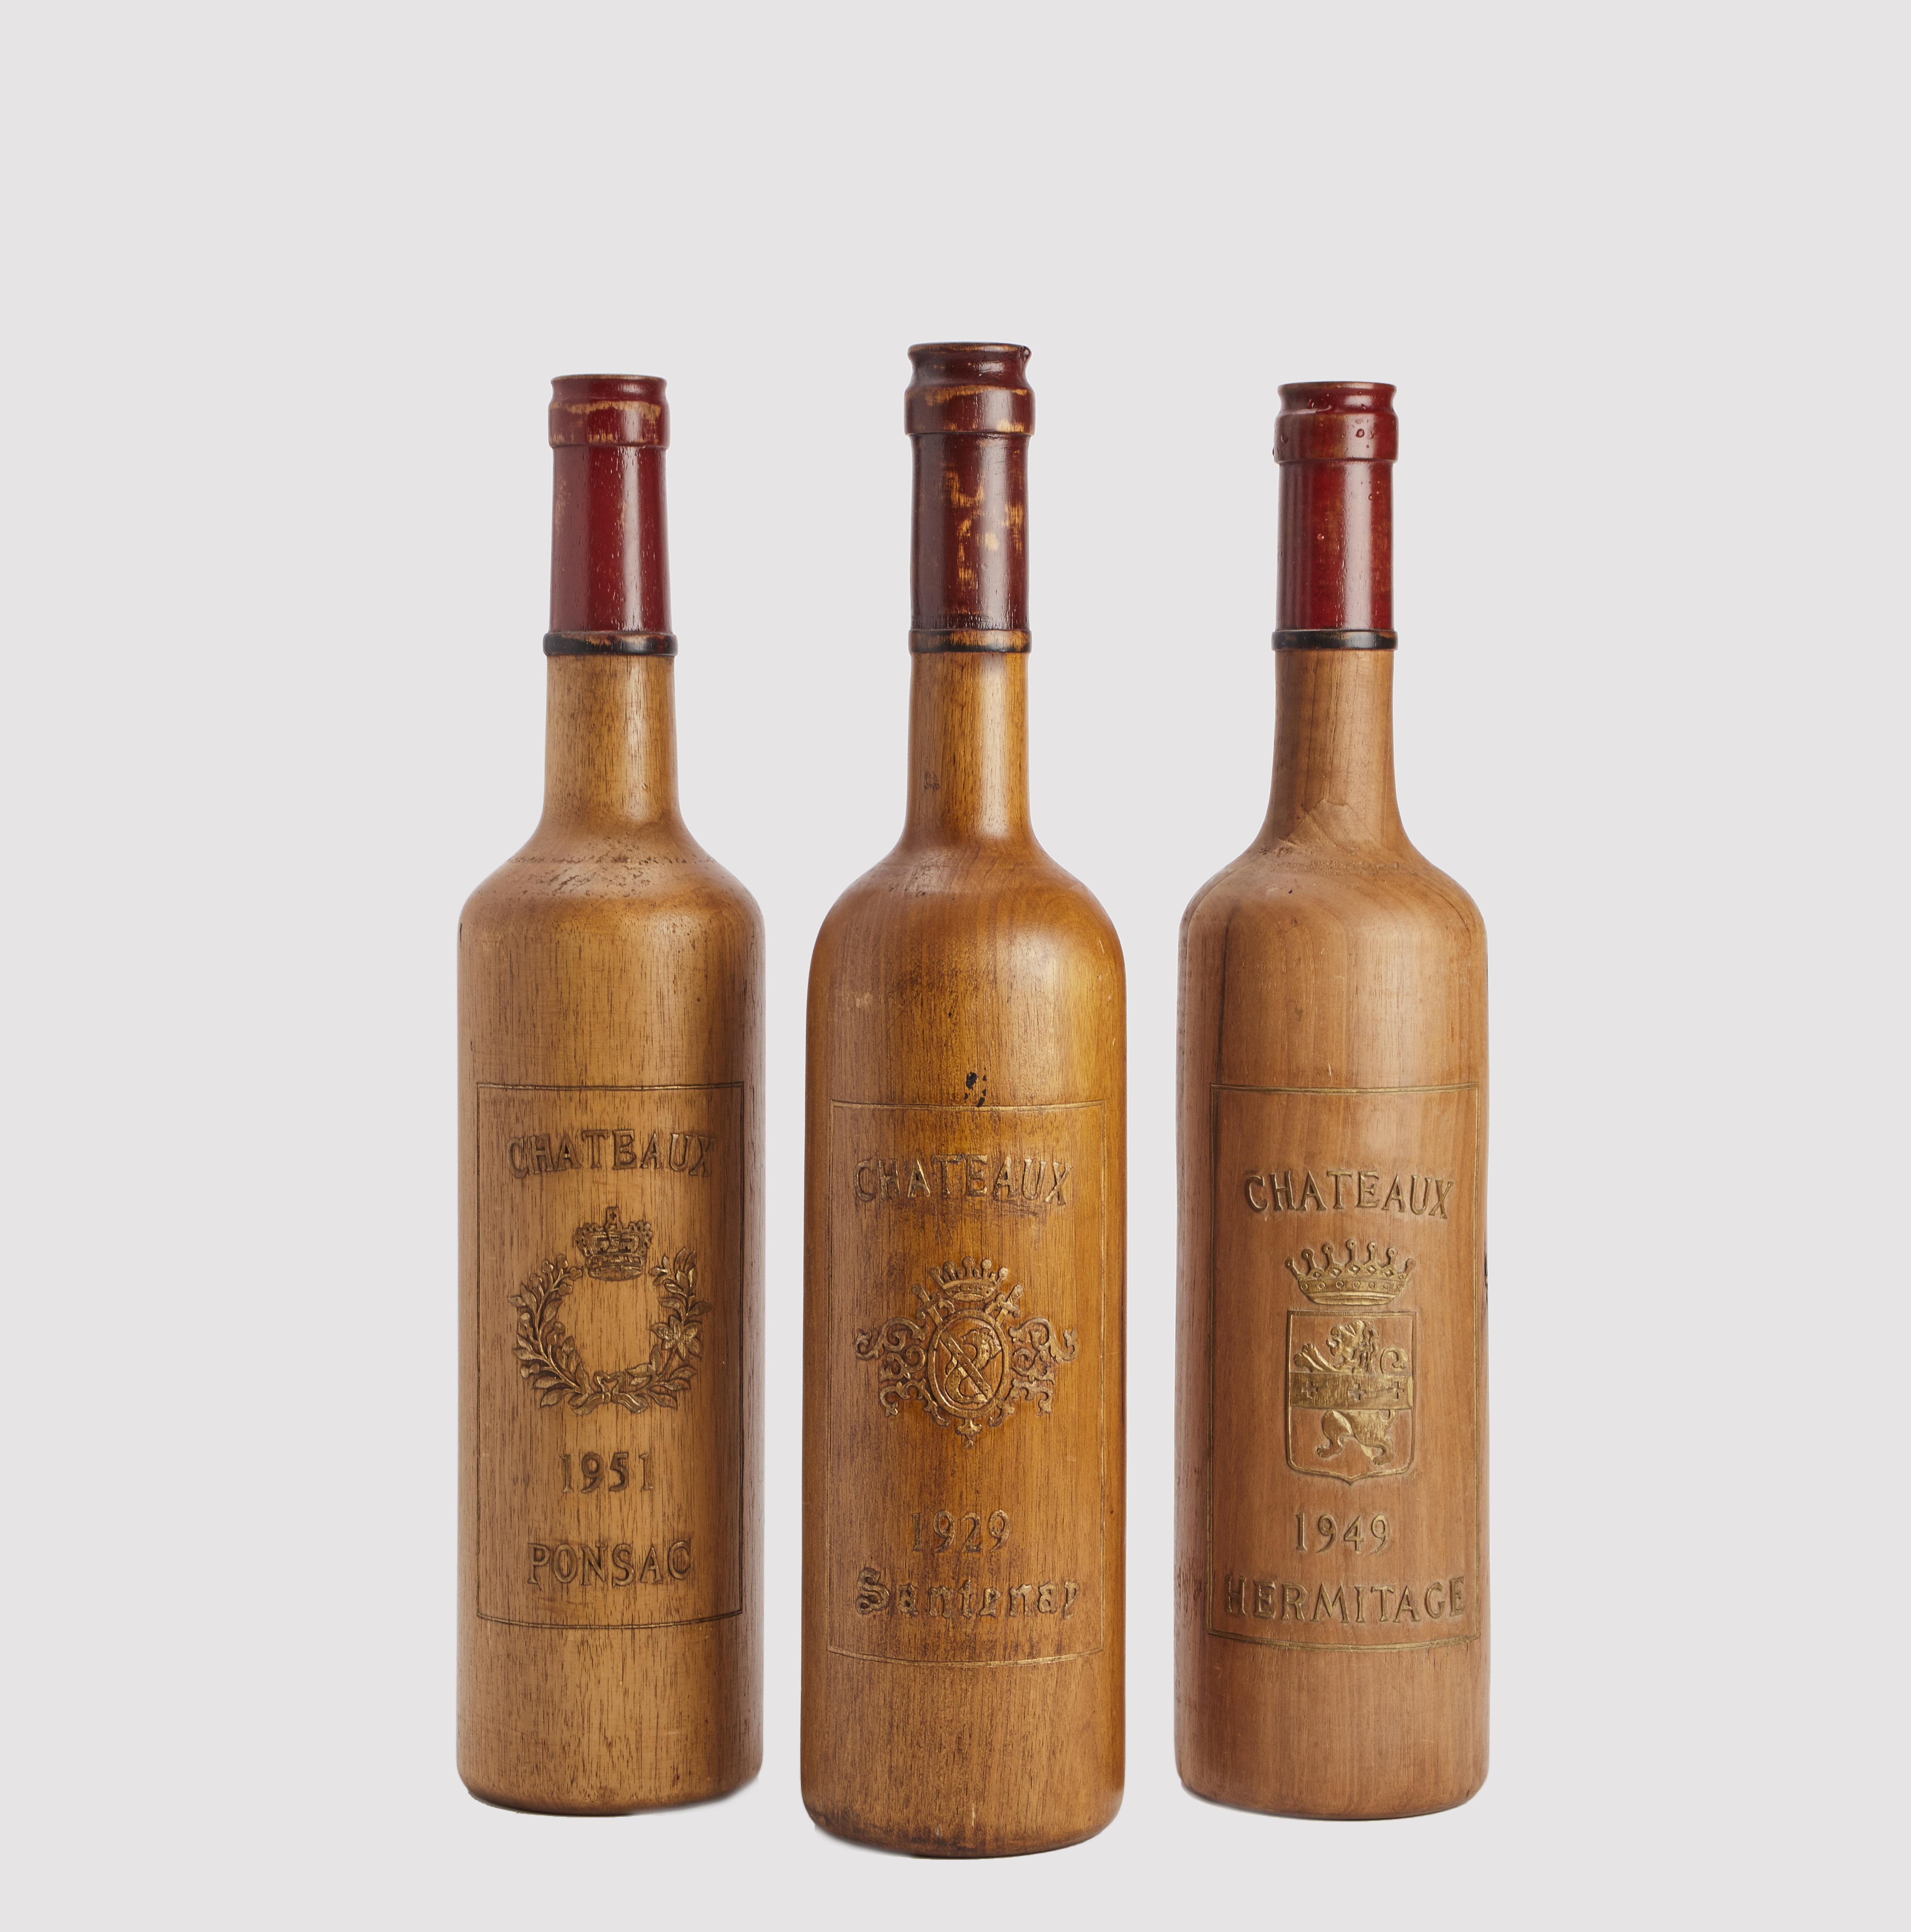 Enseigne commerciale pour la vitrine d'un caviste, représentant trois bouteilles avec l'étiquette de vins français : Château Santenay, Château Ponsac, Château Ermitage. Fabriqué en bois fruitier massif sculpté. Les labels sont gravés en relief et